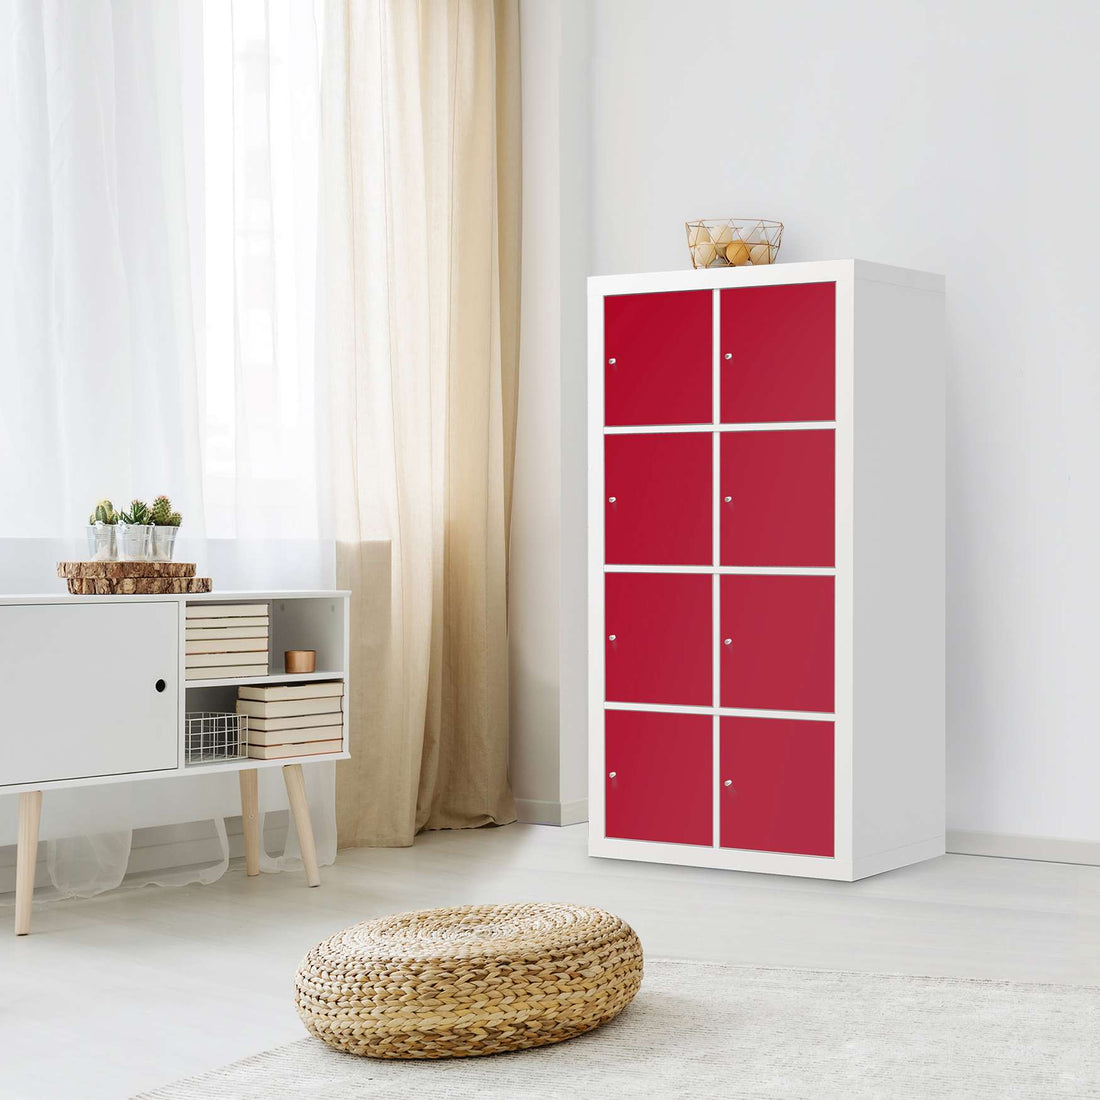 Klebefolie Rot Dark - IKEA Expedit Regal 8 Türen - Wohnzimmer